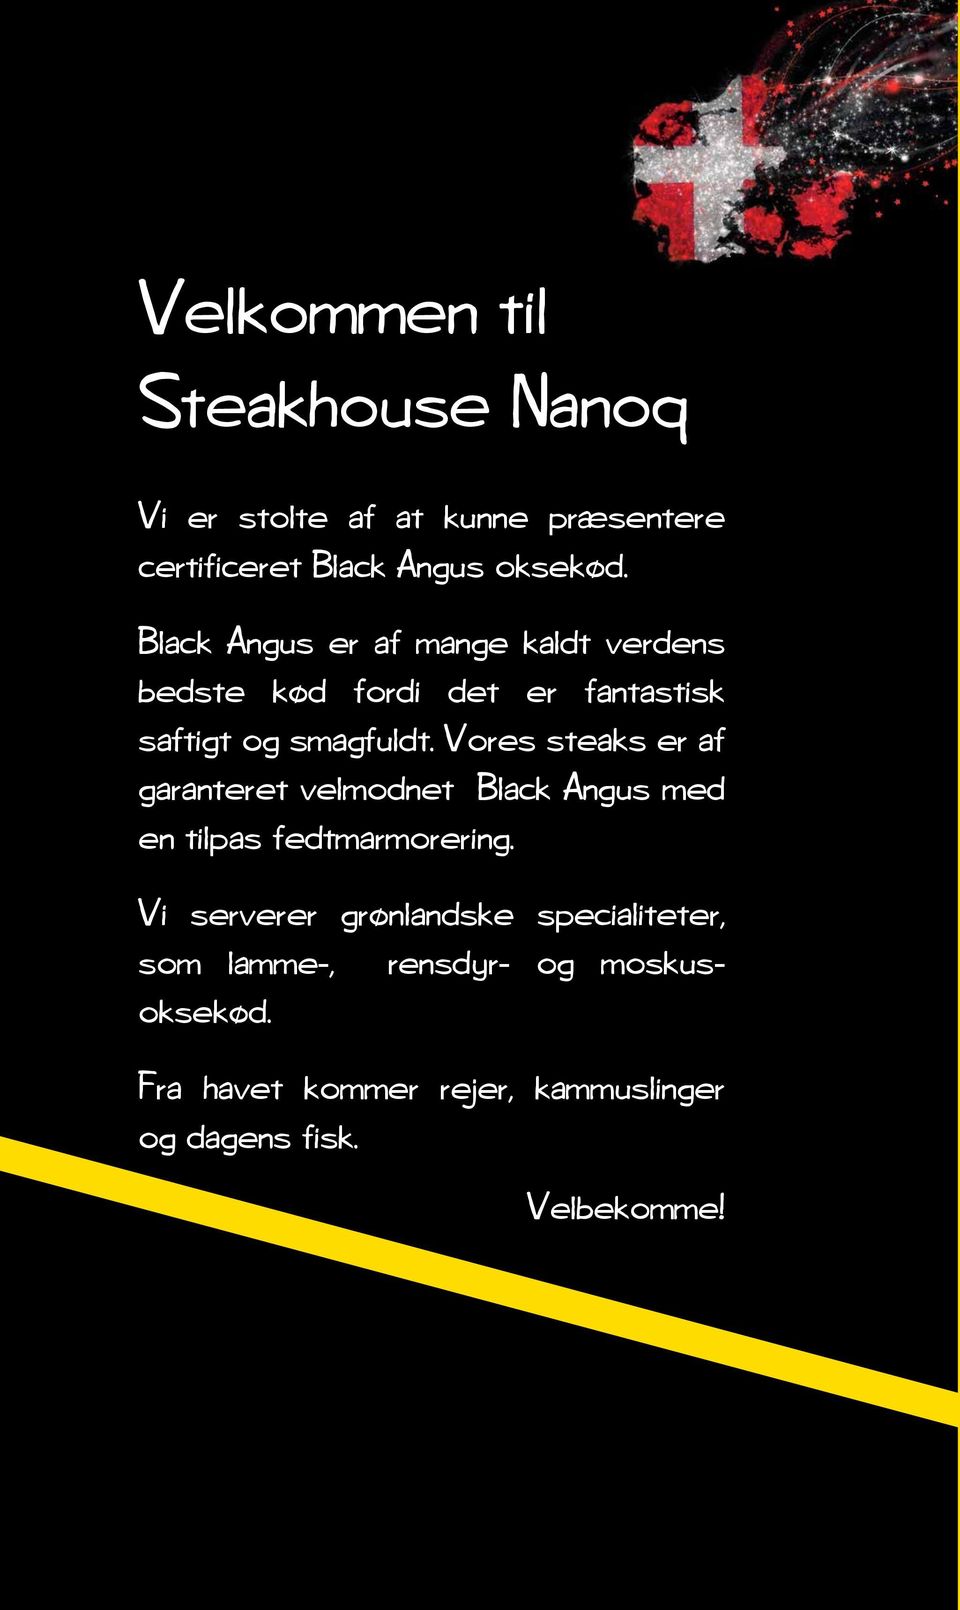 Vores steaks er af garanteret velmodnet Black Angus med en tilpas fedtmarmorering.